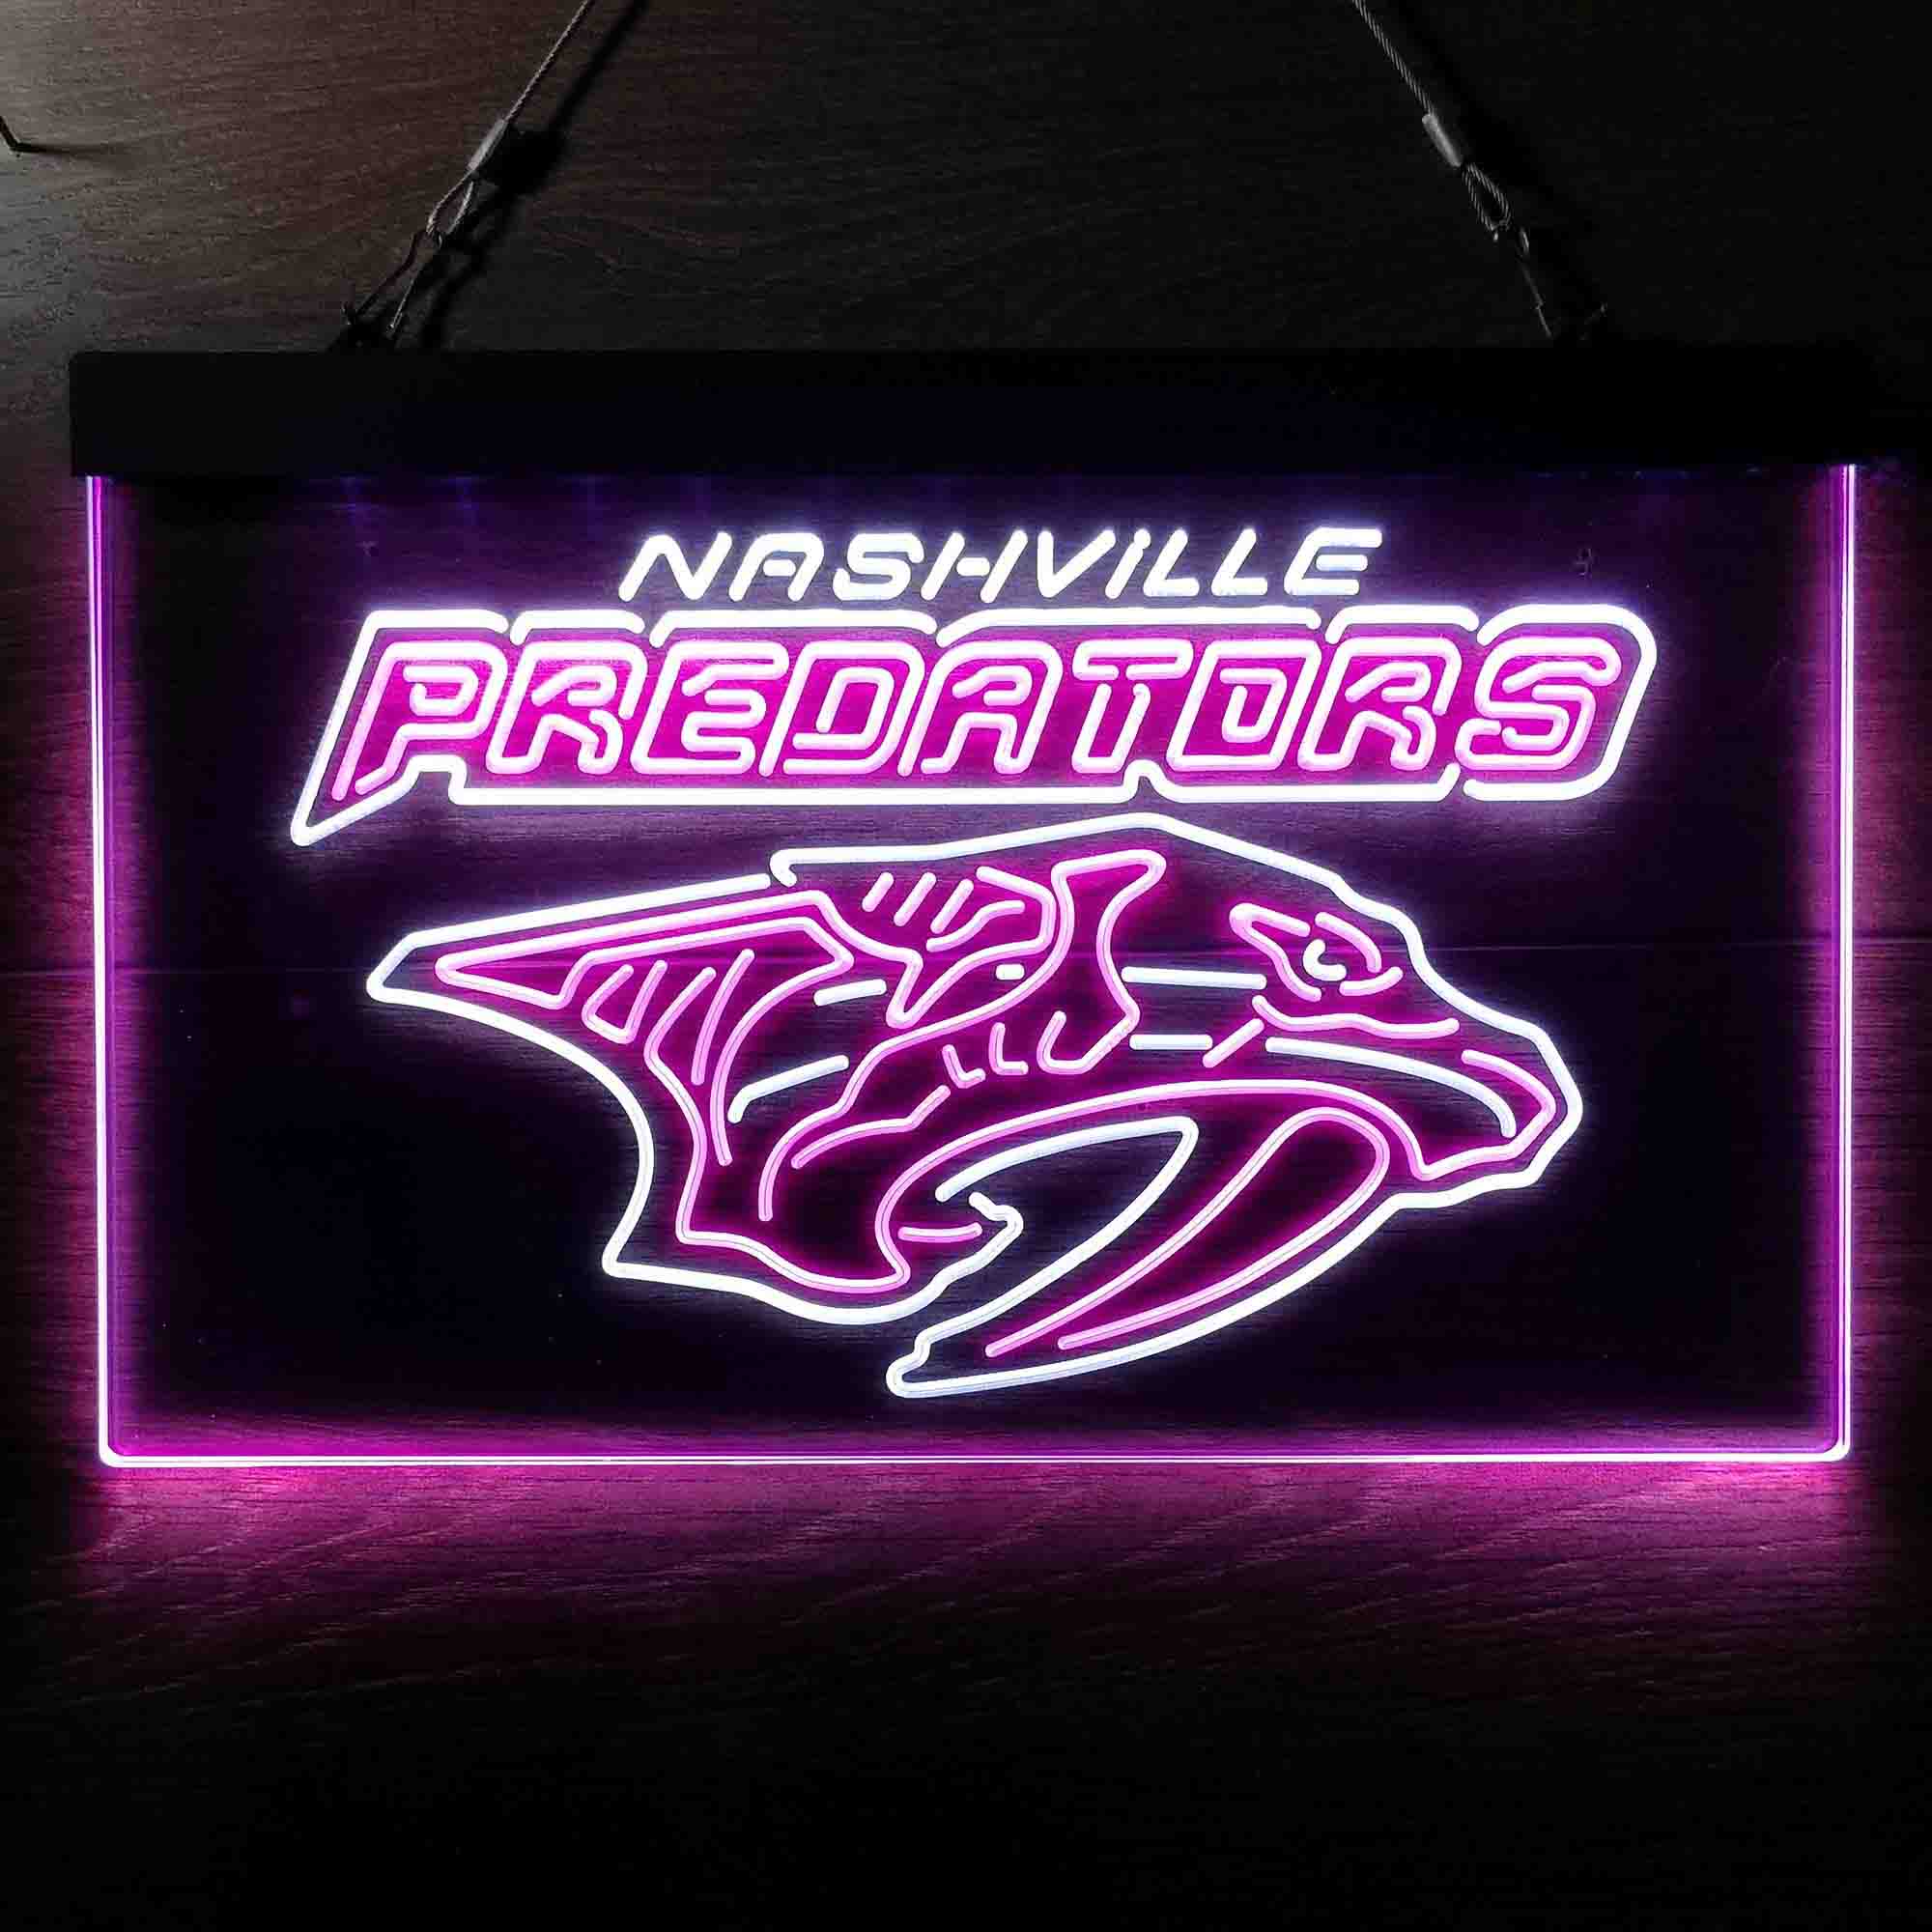 Nashville League Club Predators LED Neon Sign